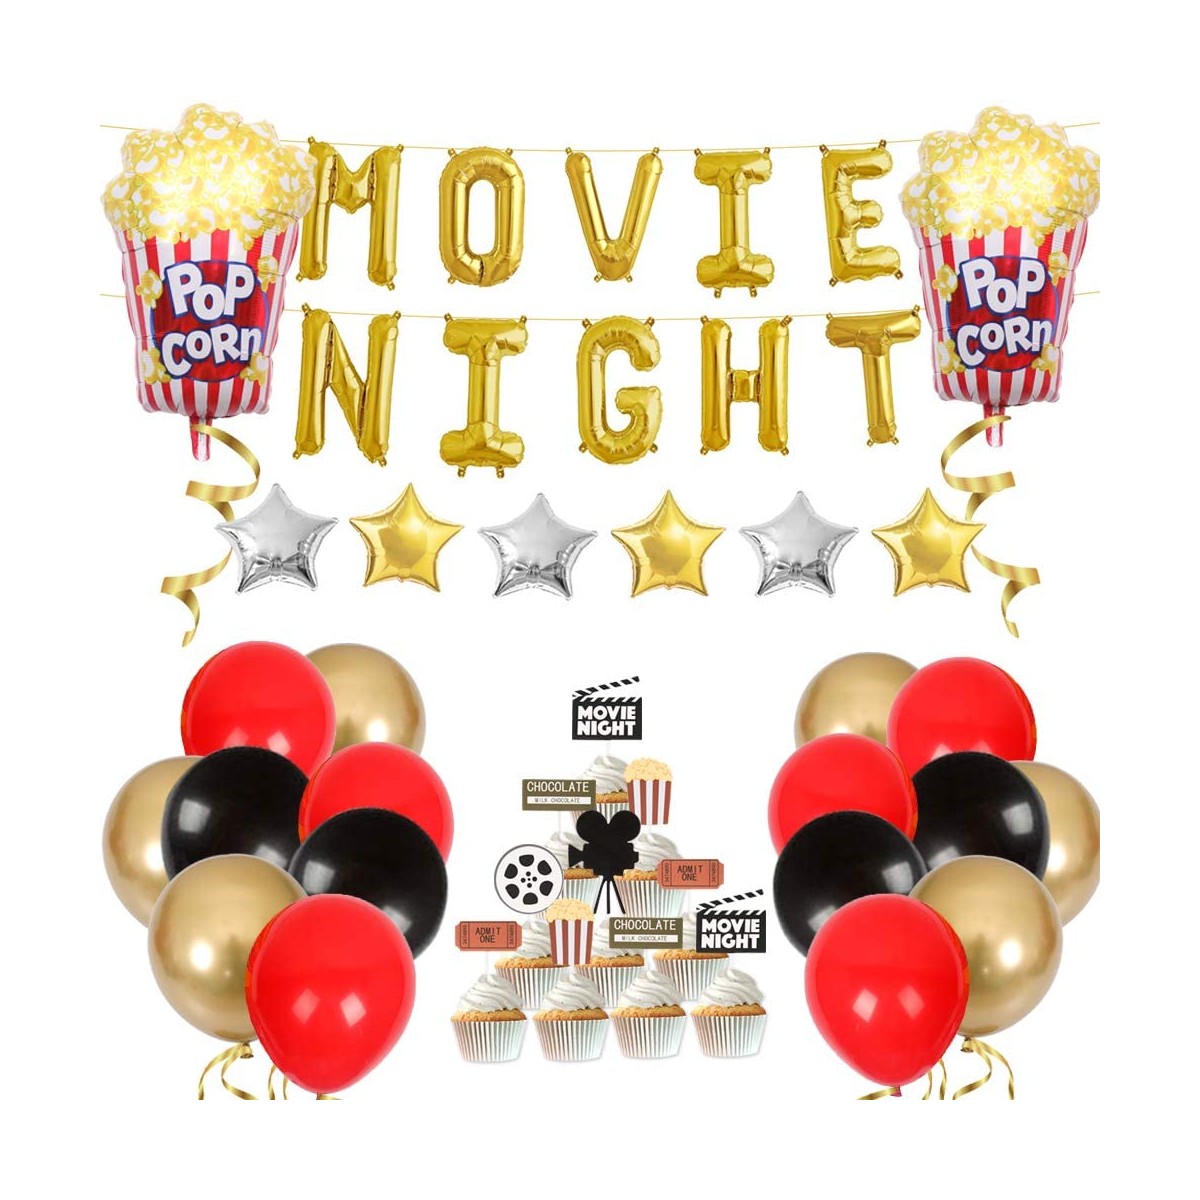 Set decorazioni con palloncini Movie Night, per feste a tema